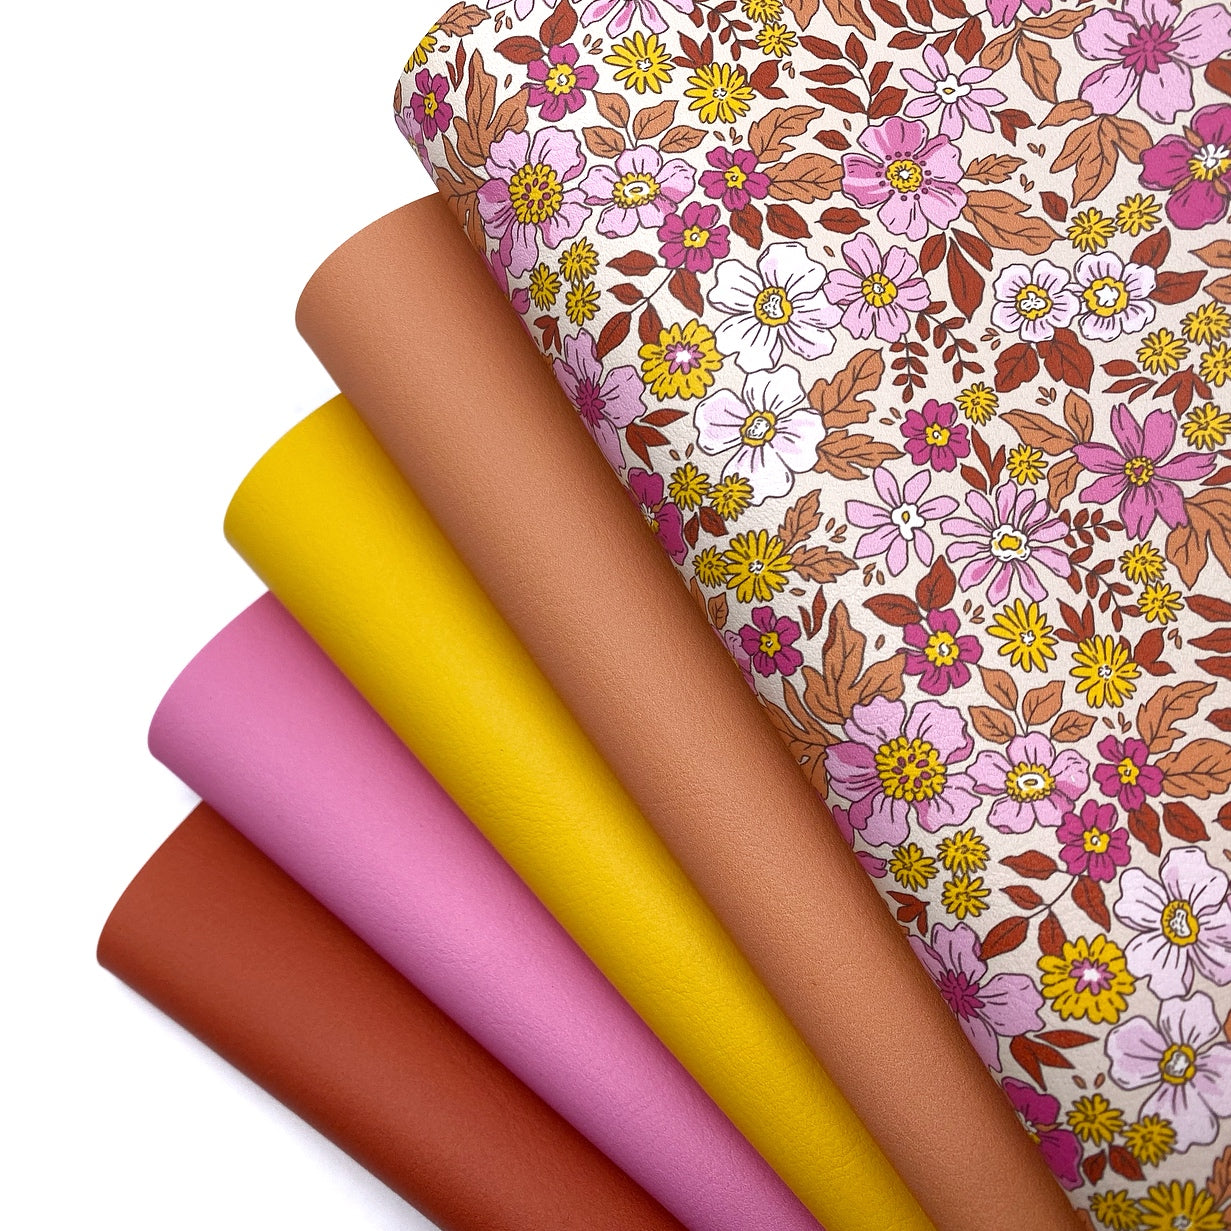 Wild Autumn Florals Premium Faux Leather Fabric Sheet Set